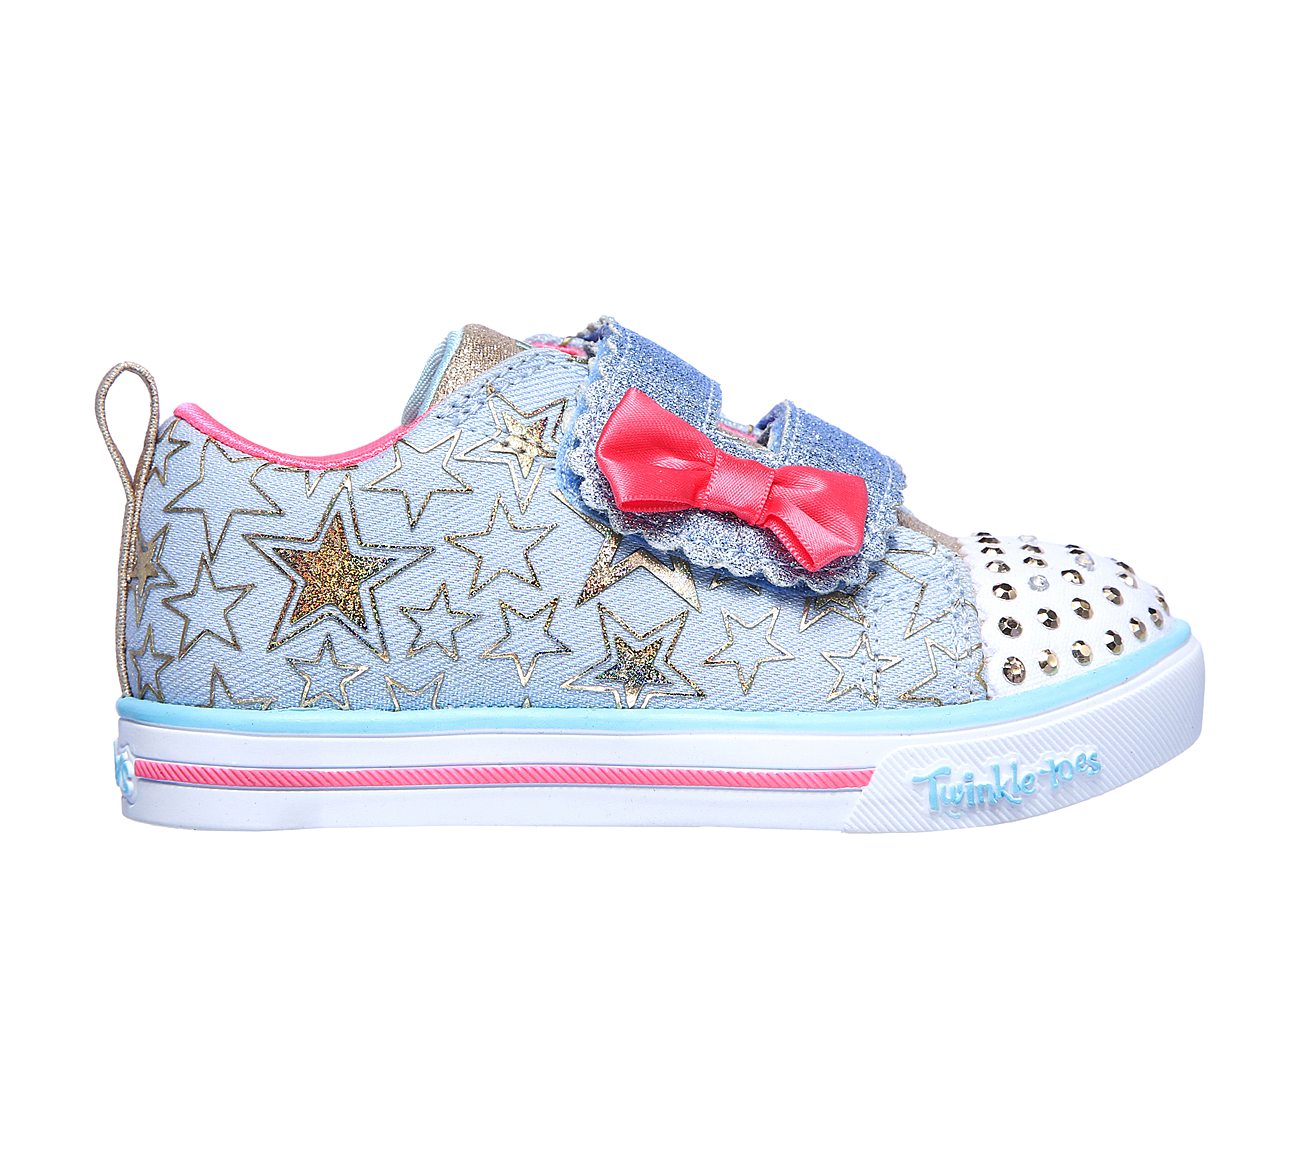 light up sparkle shoes